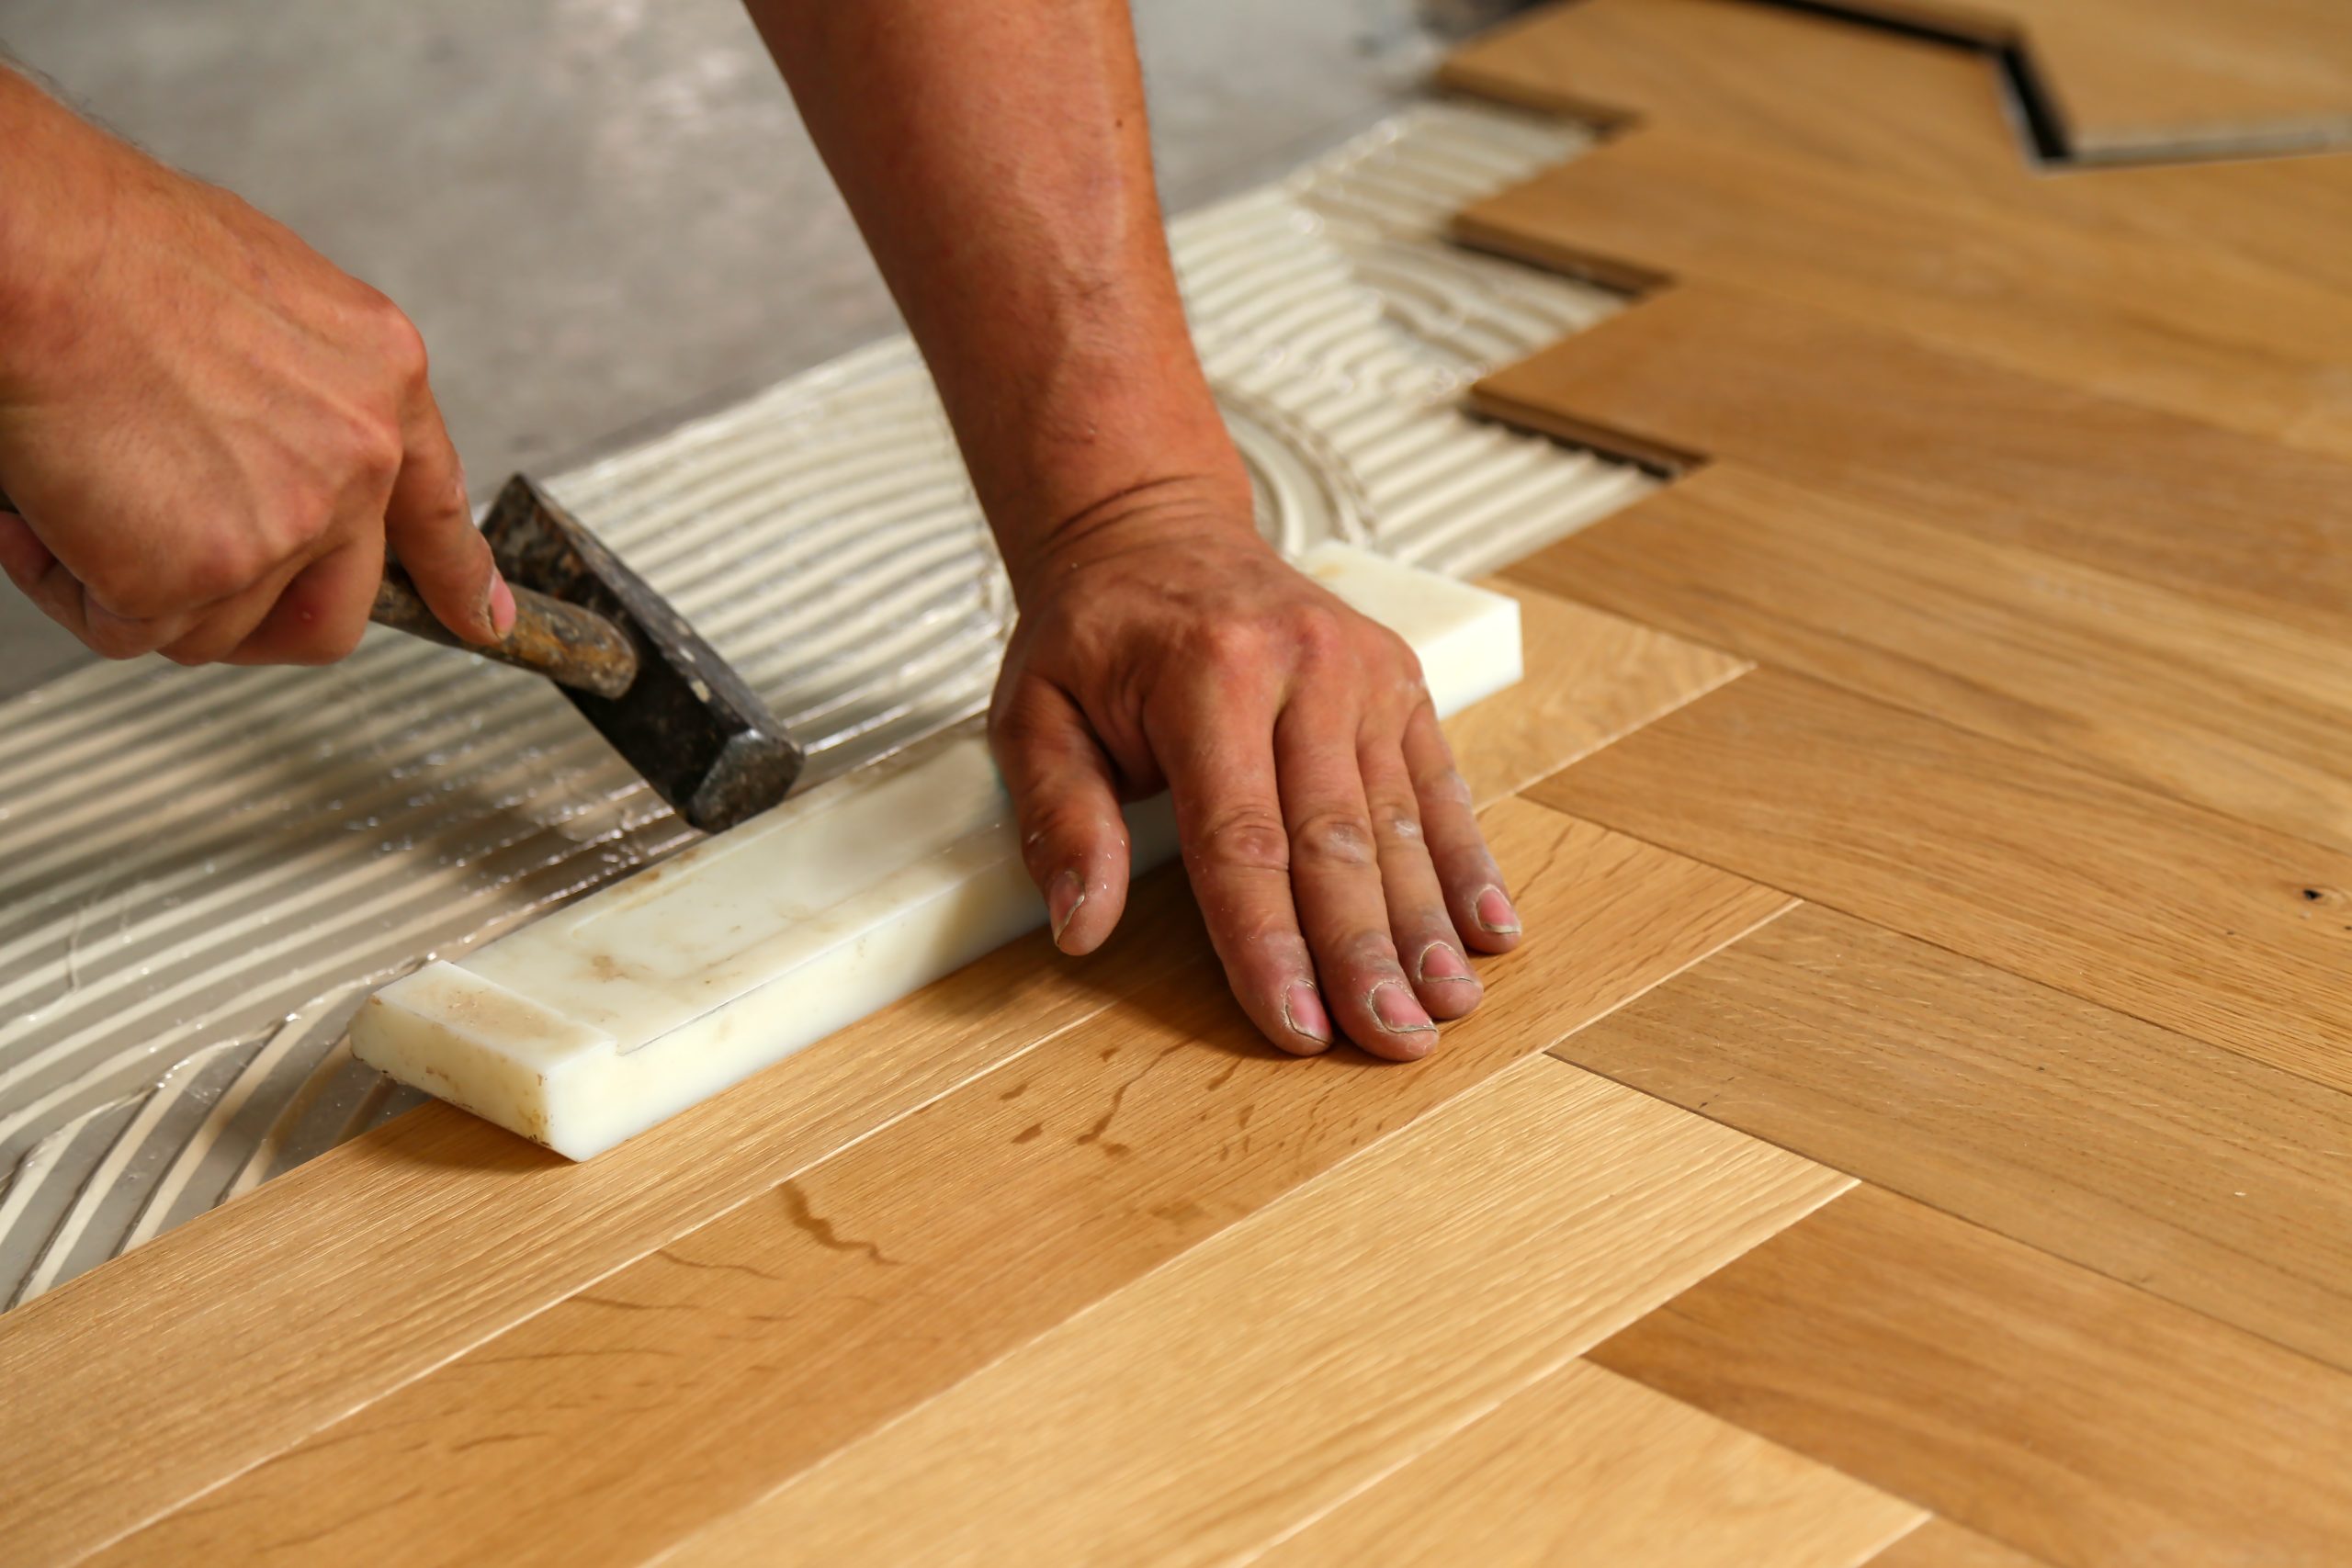 A worker installing parquet flooring